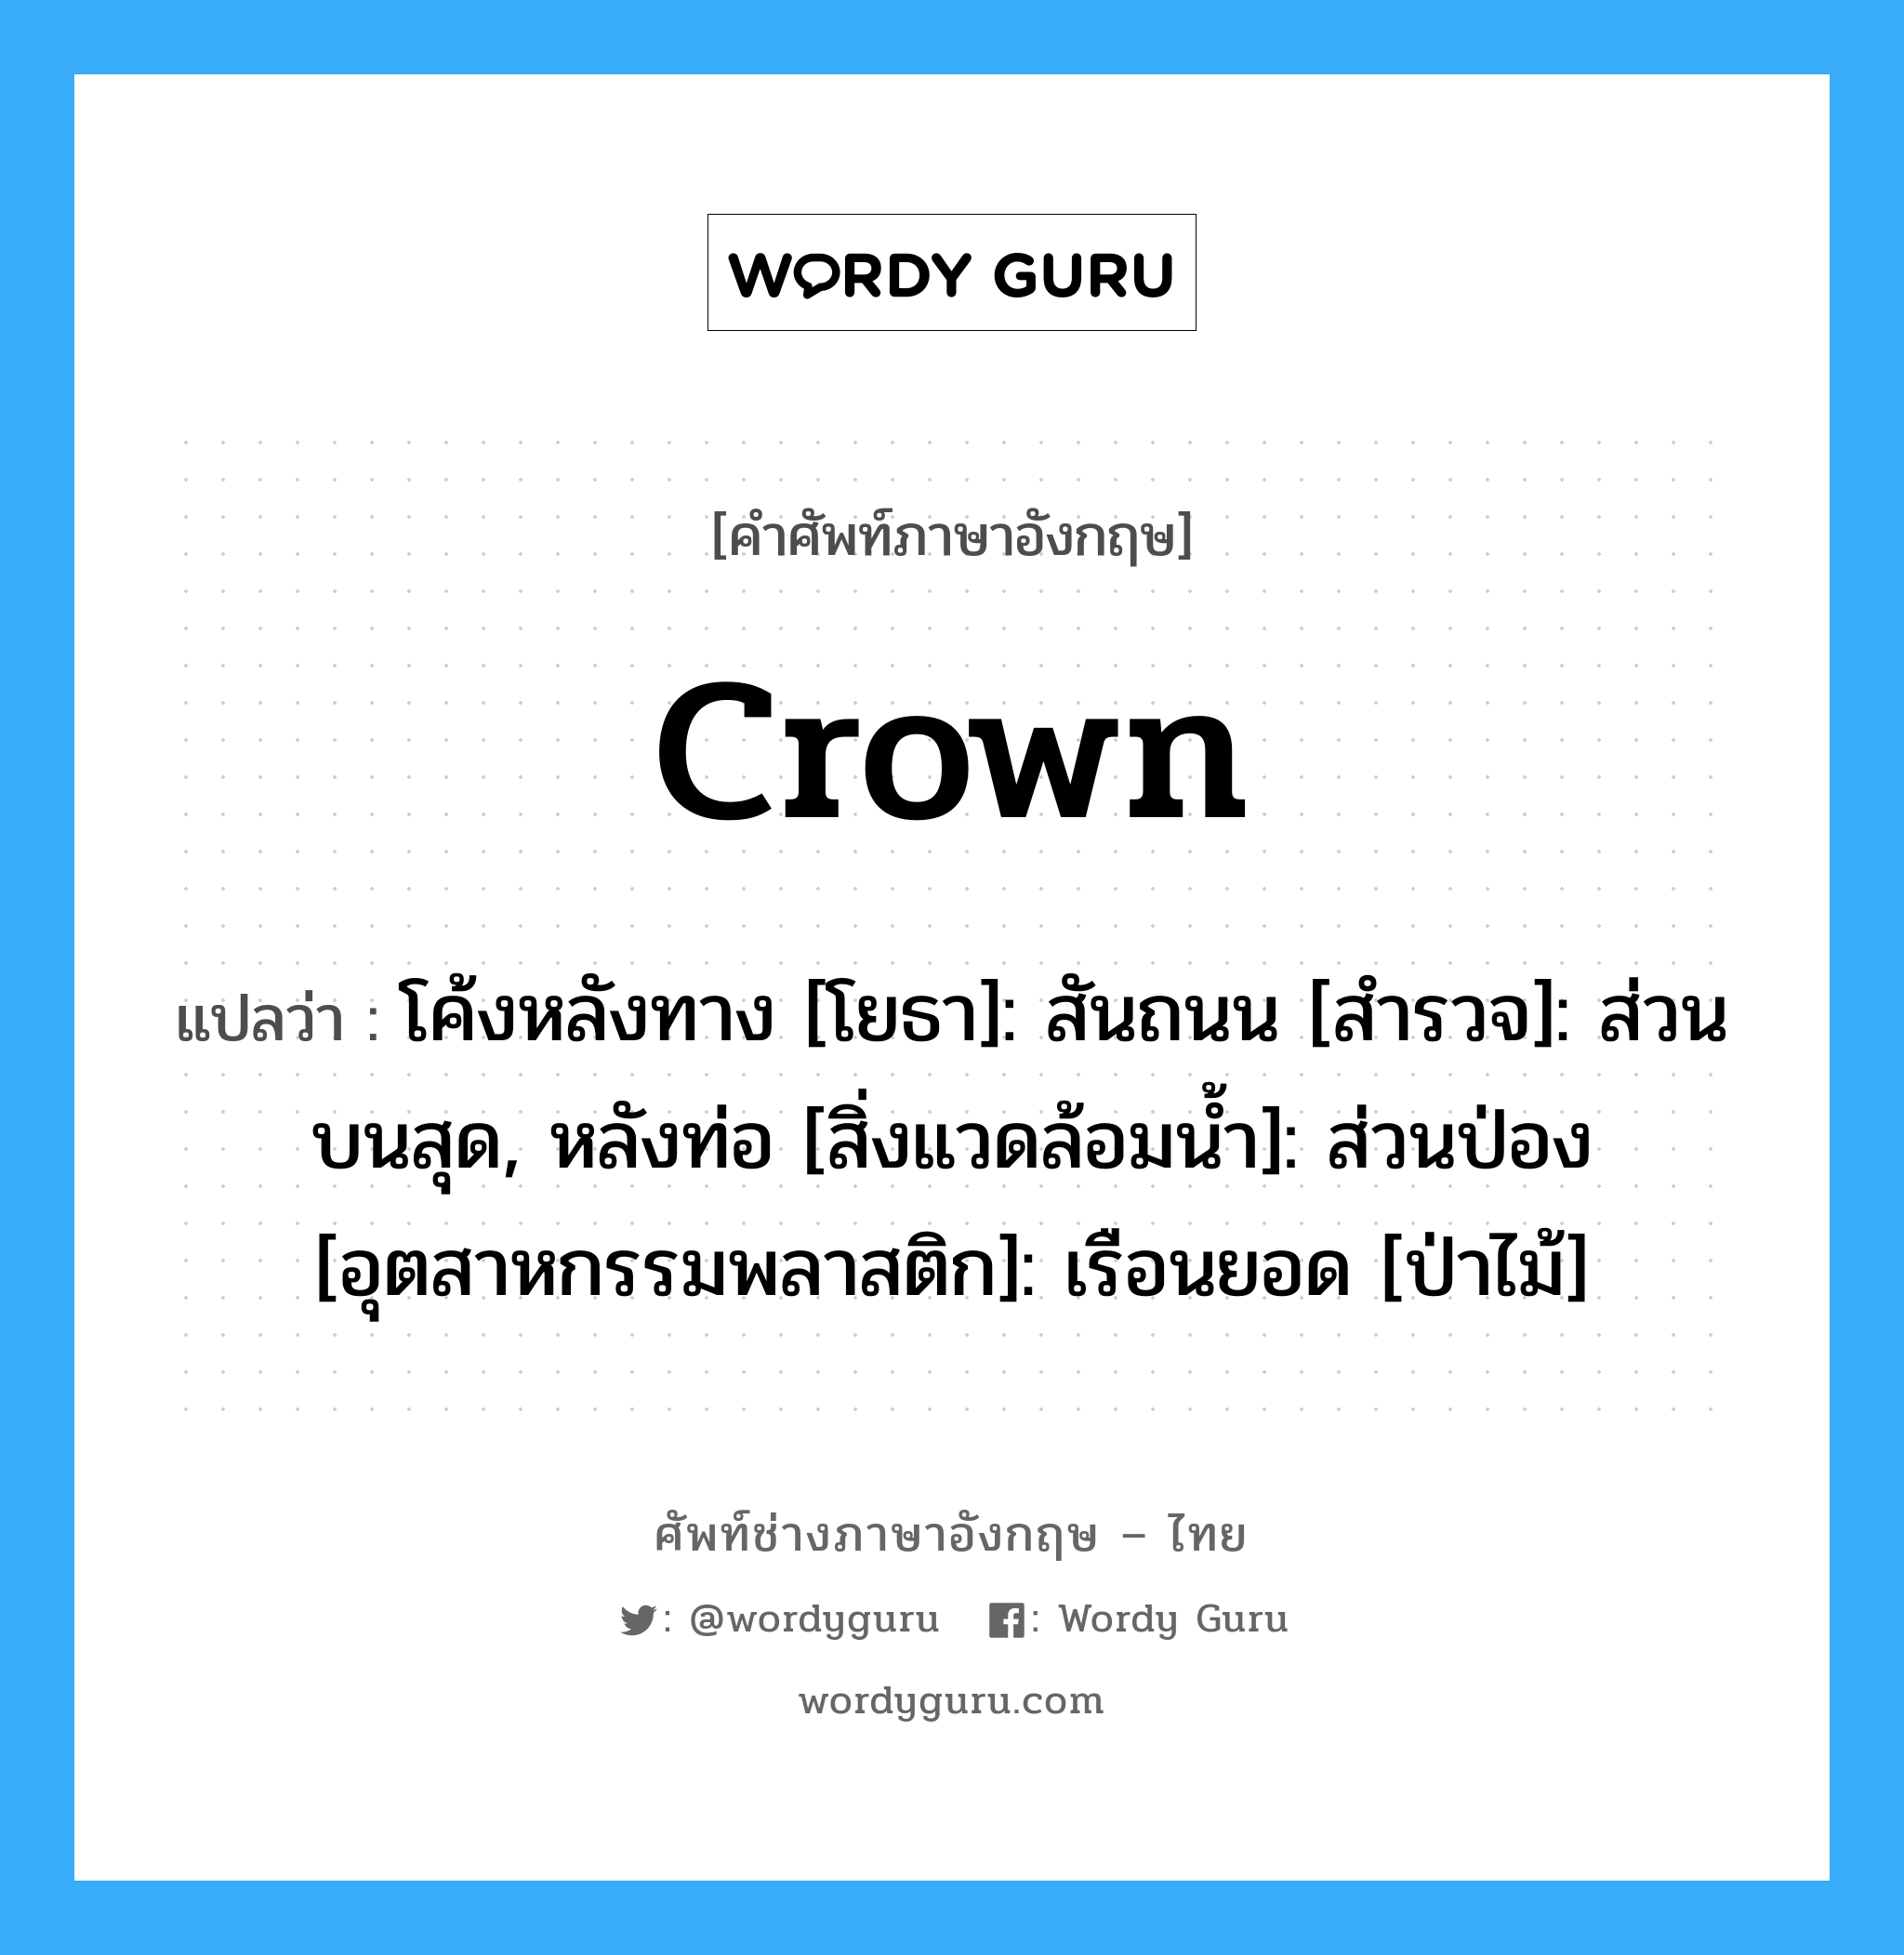 crown แปลว่า?, คำศัพท์ช่างภาษาอังกฤษ - ไทย crown คำศัพท์ภาษาอังกฤษ crown แปลว่า โค้งหลังทาง [โยธา]: สันถนน [สำรวจ]: ส่วนบนสุด, หลังท่อ [สิ่งแวดล้อมน้ำ]: ส่วนป่อง [อุตสาหกรรมพลาสติก]: เรือนยอด [ป่าไม้]